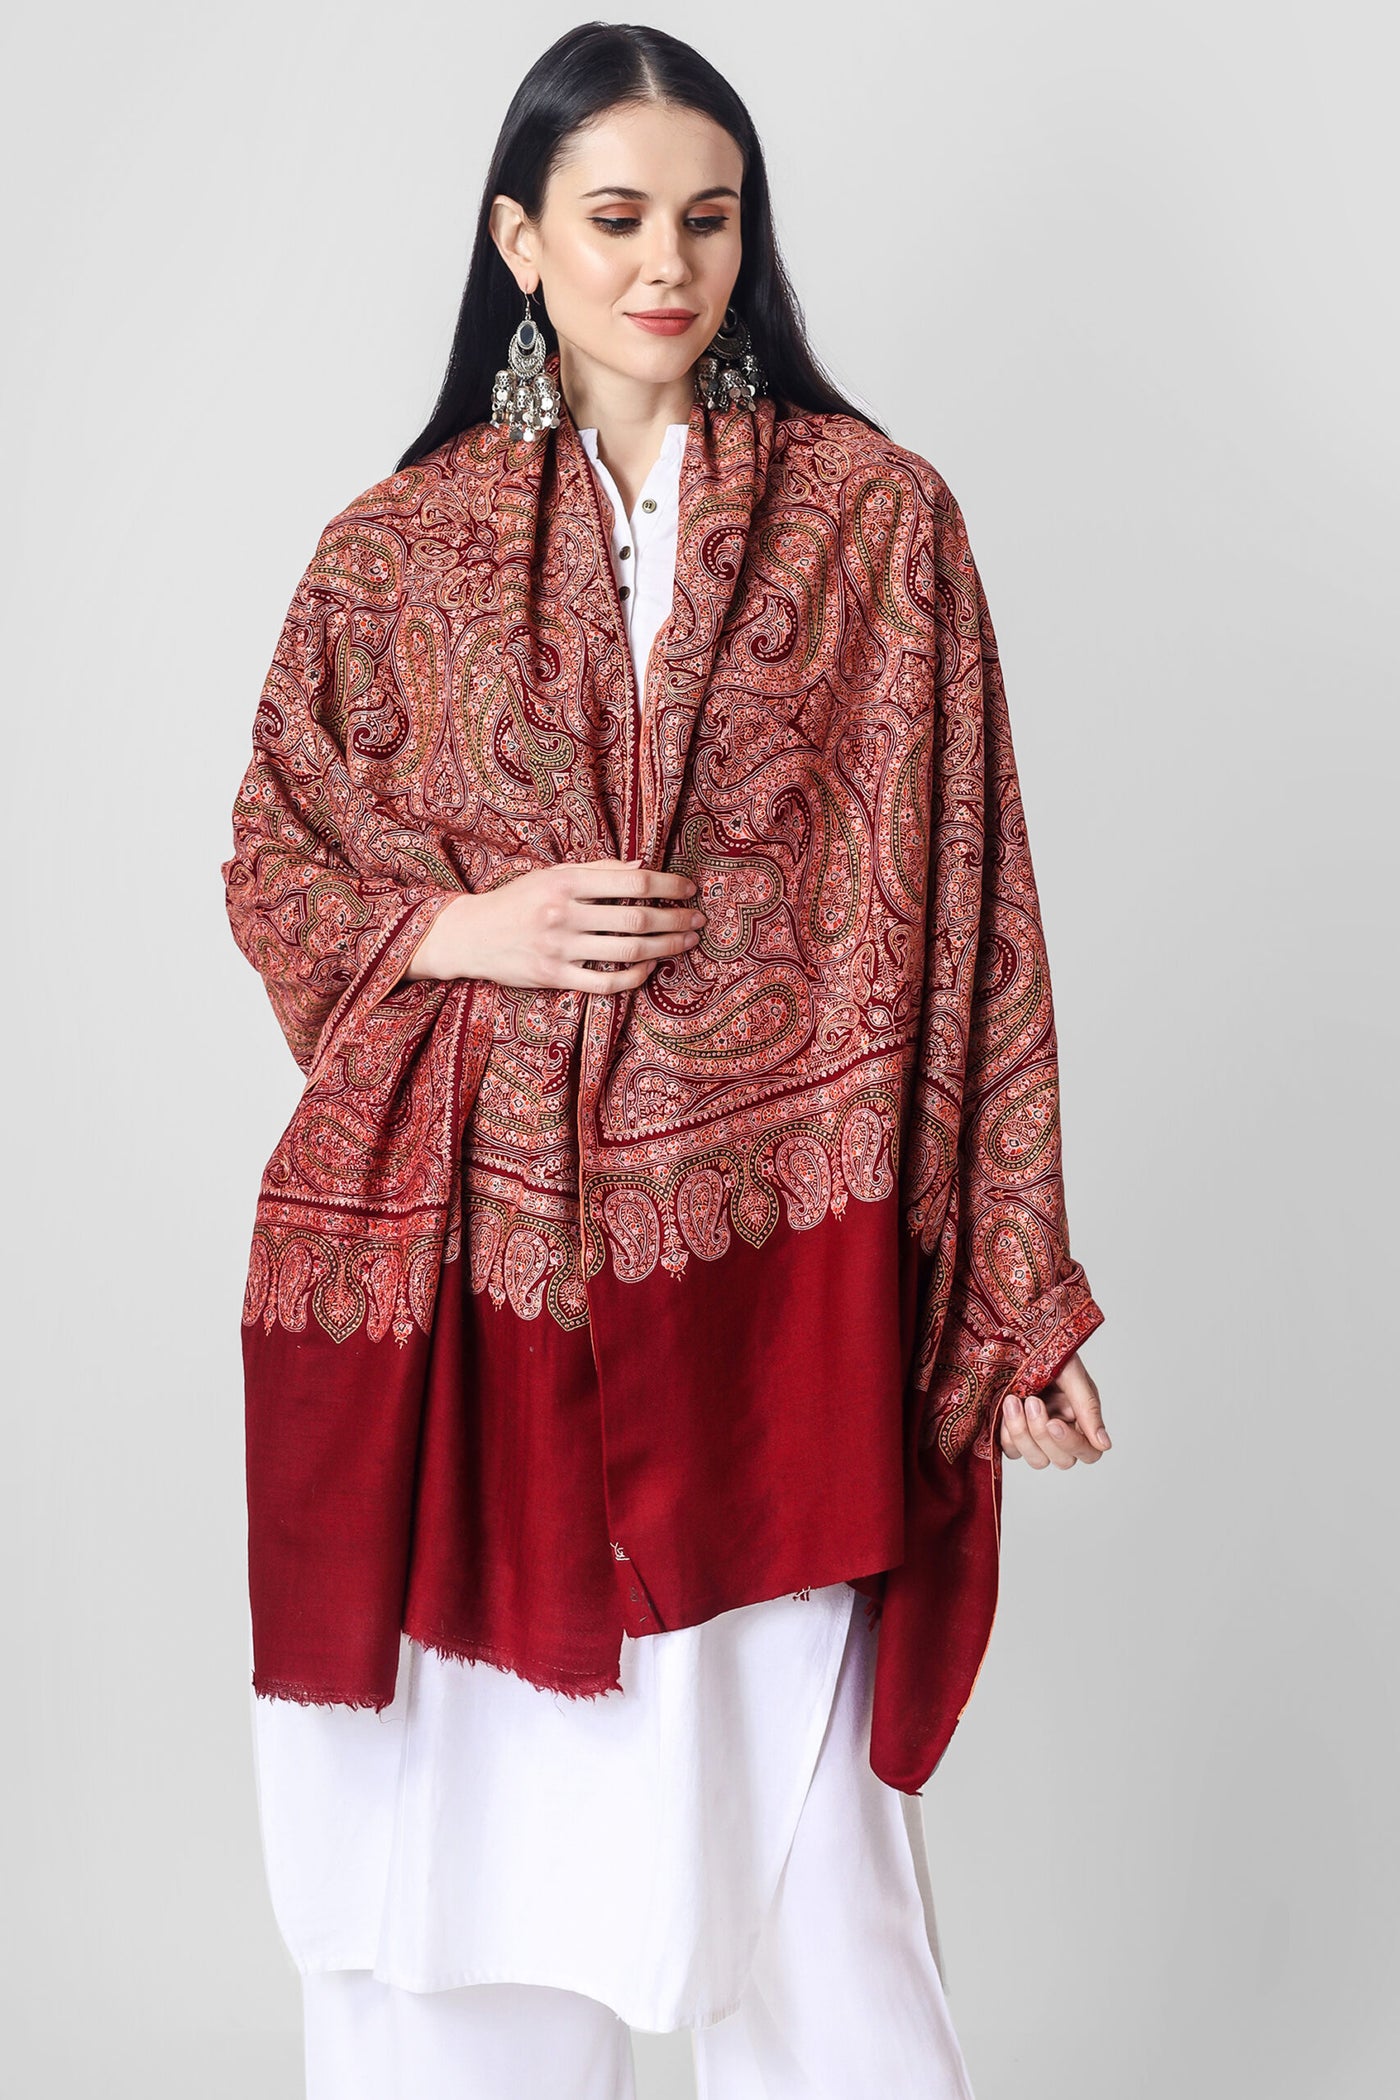 Maroon Sozni Needlework Jama Pashmina shawl. "PASHMINA SHAWL - Experience Kashmiri Artistry" "PASHMINA SHAWLS IN CHINA - "KEPRA PASHMINA SHAWLS - Luxury at Its Best"